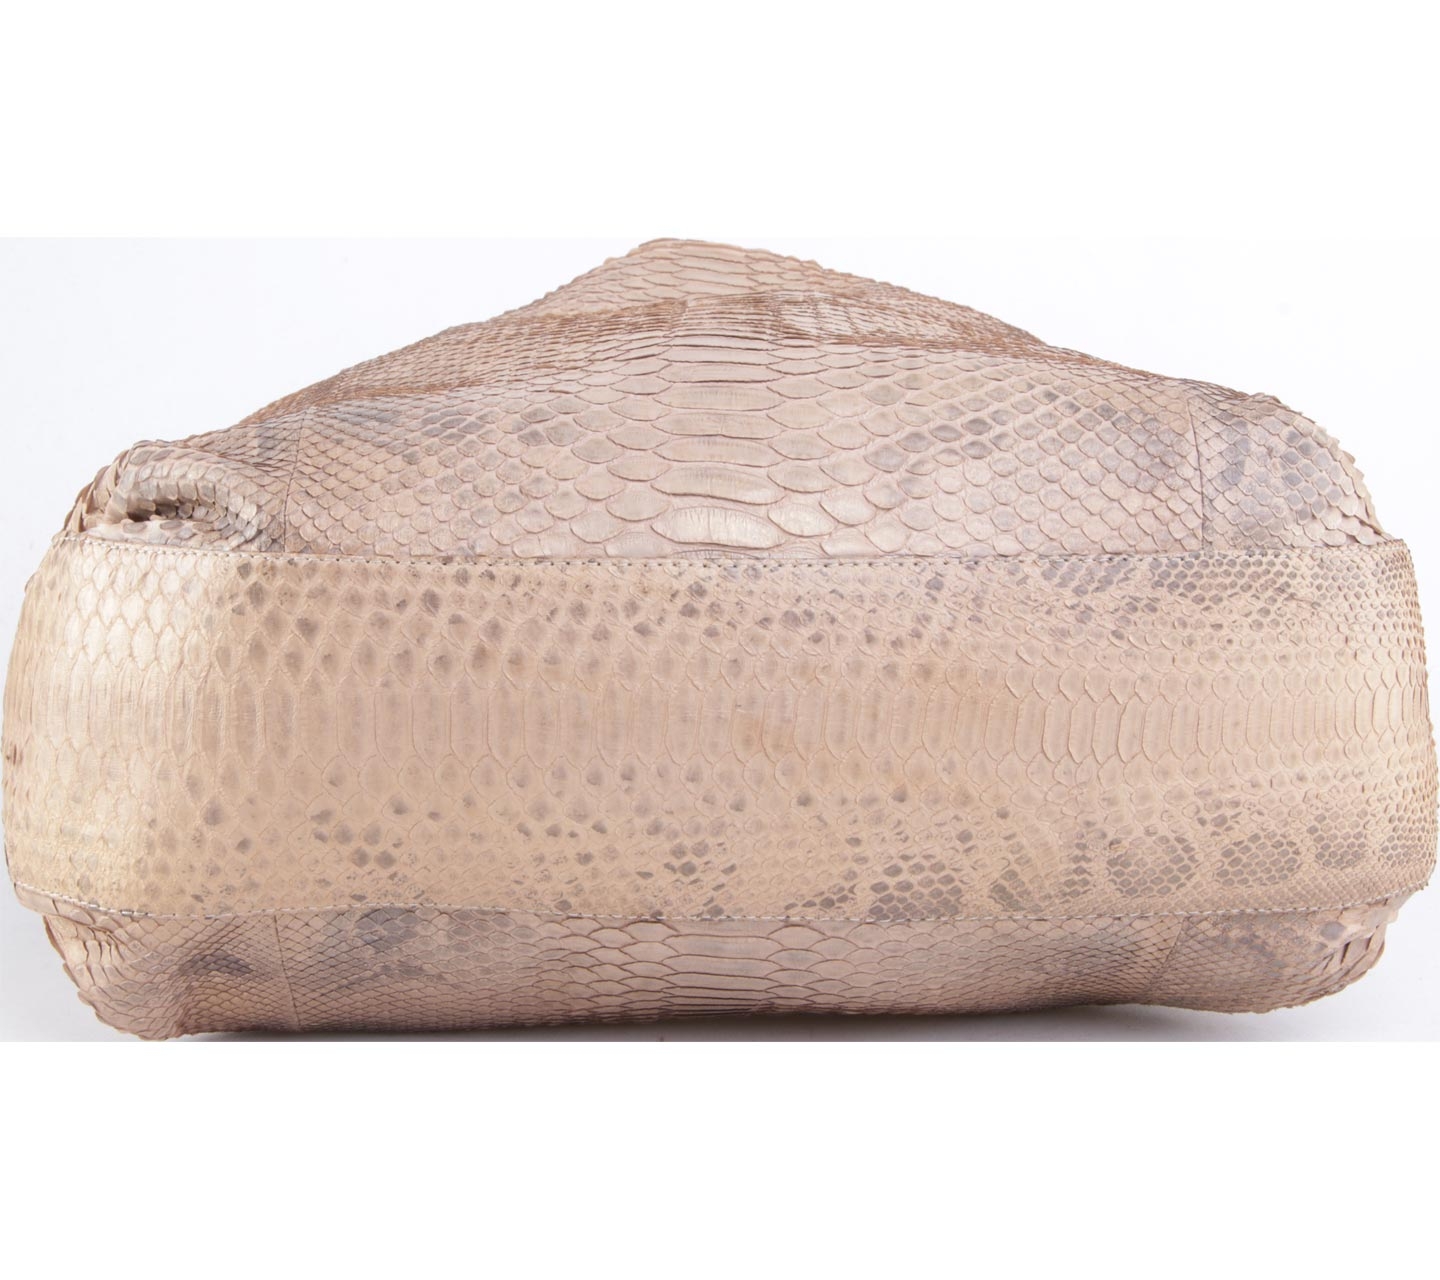 Caslee Brown Snakeskin Shoulder Bag